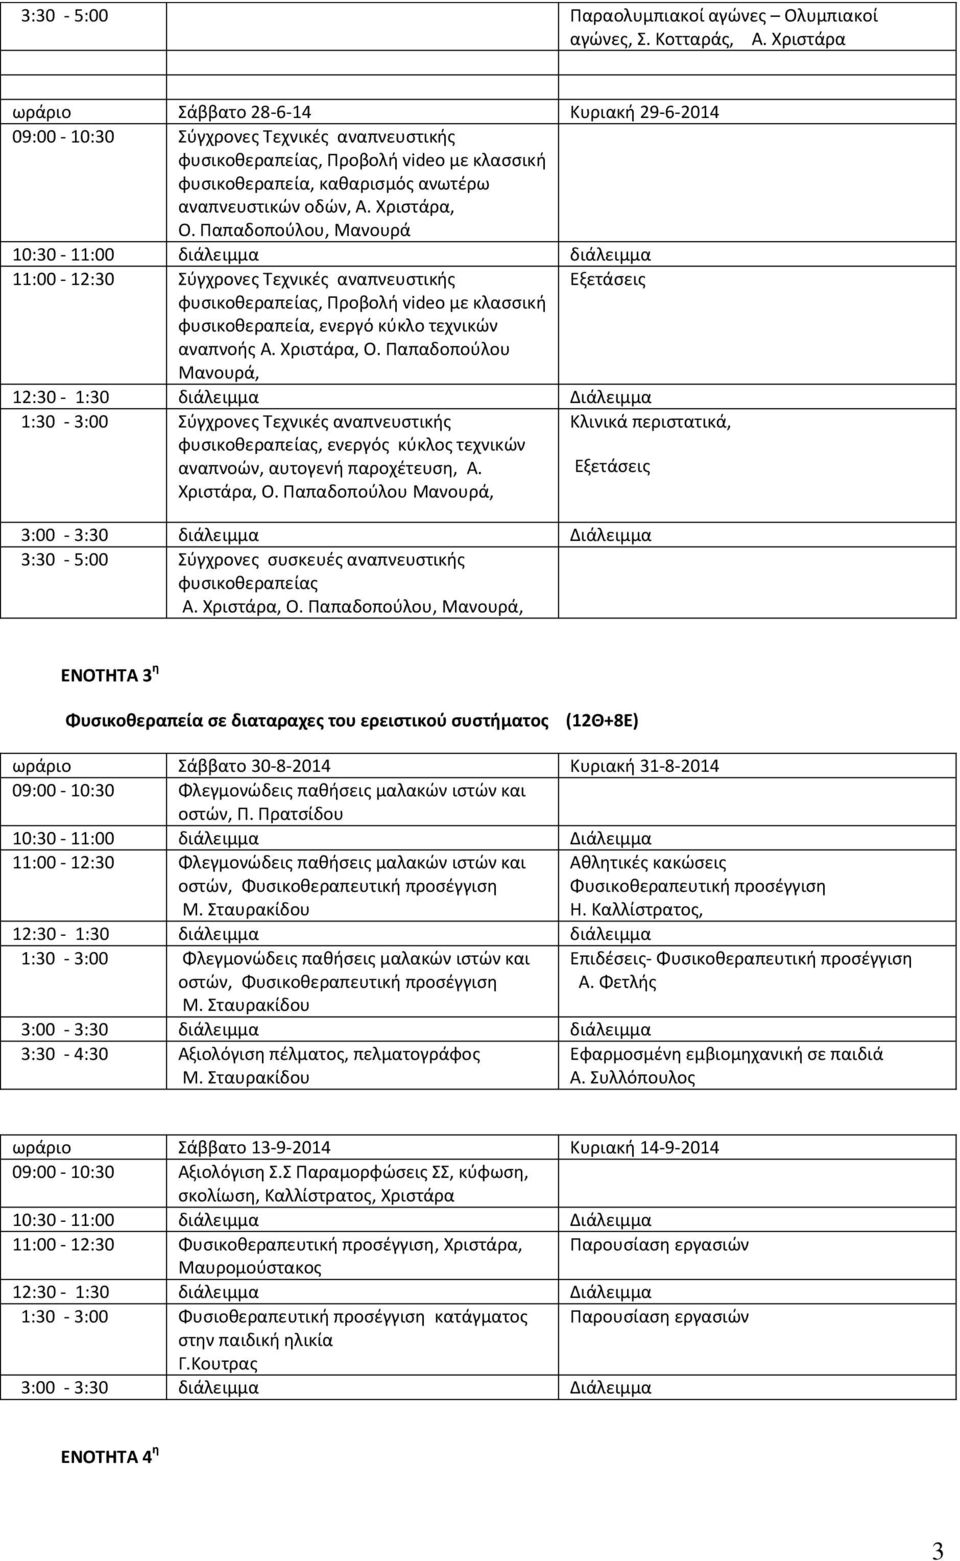 Χριστάρα, Ο. Παπαδοπούλου, Μανουρά 11:00-12:30 Σύγχρονες Τεχνικές αναπνευστικής Εξετάσεις φυσικοθεραπείας, Προβολή video με κλασσική φυσικοθεραπεία, ενεργό κύκλο τεχνικών αναπνοής Α. Χριστάρα, Ο.